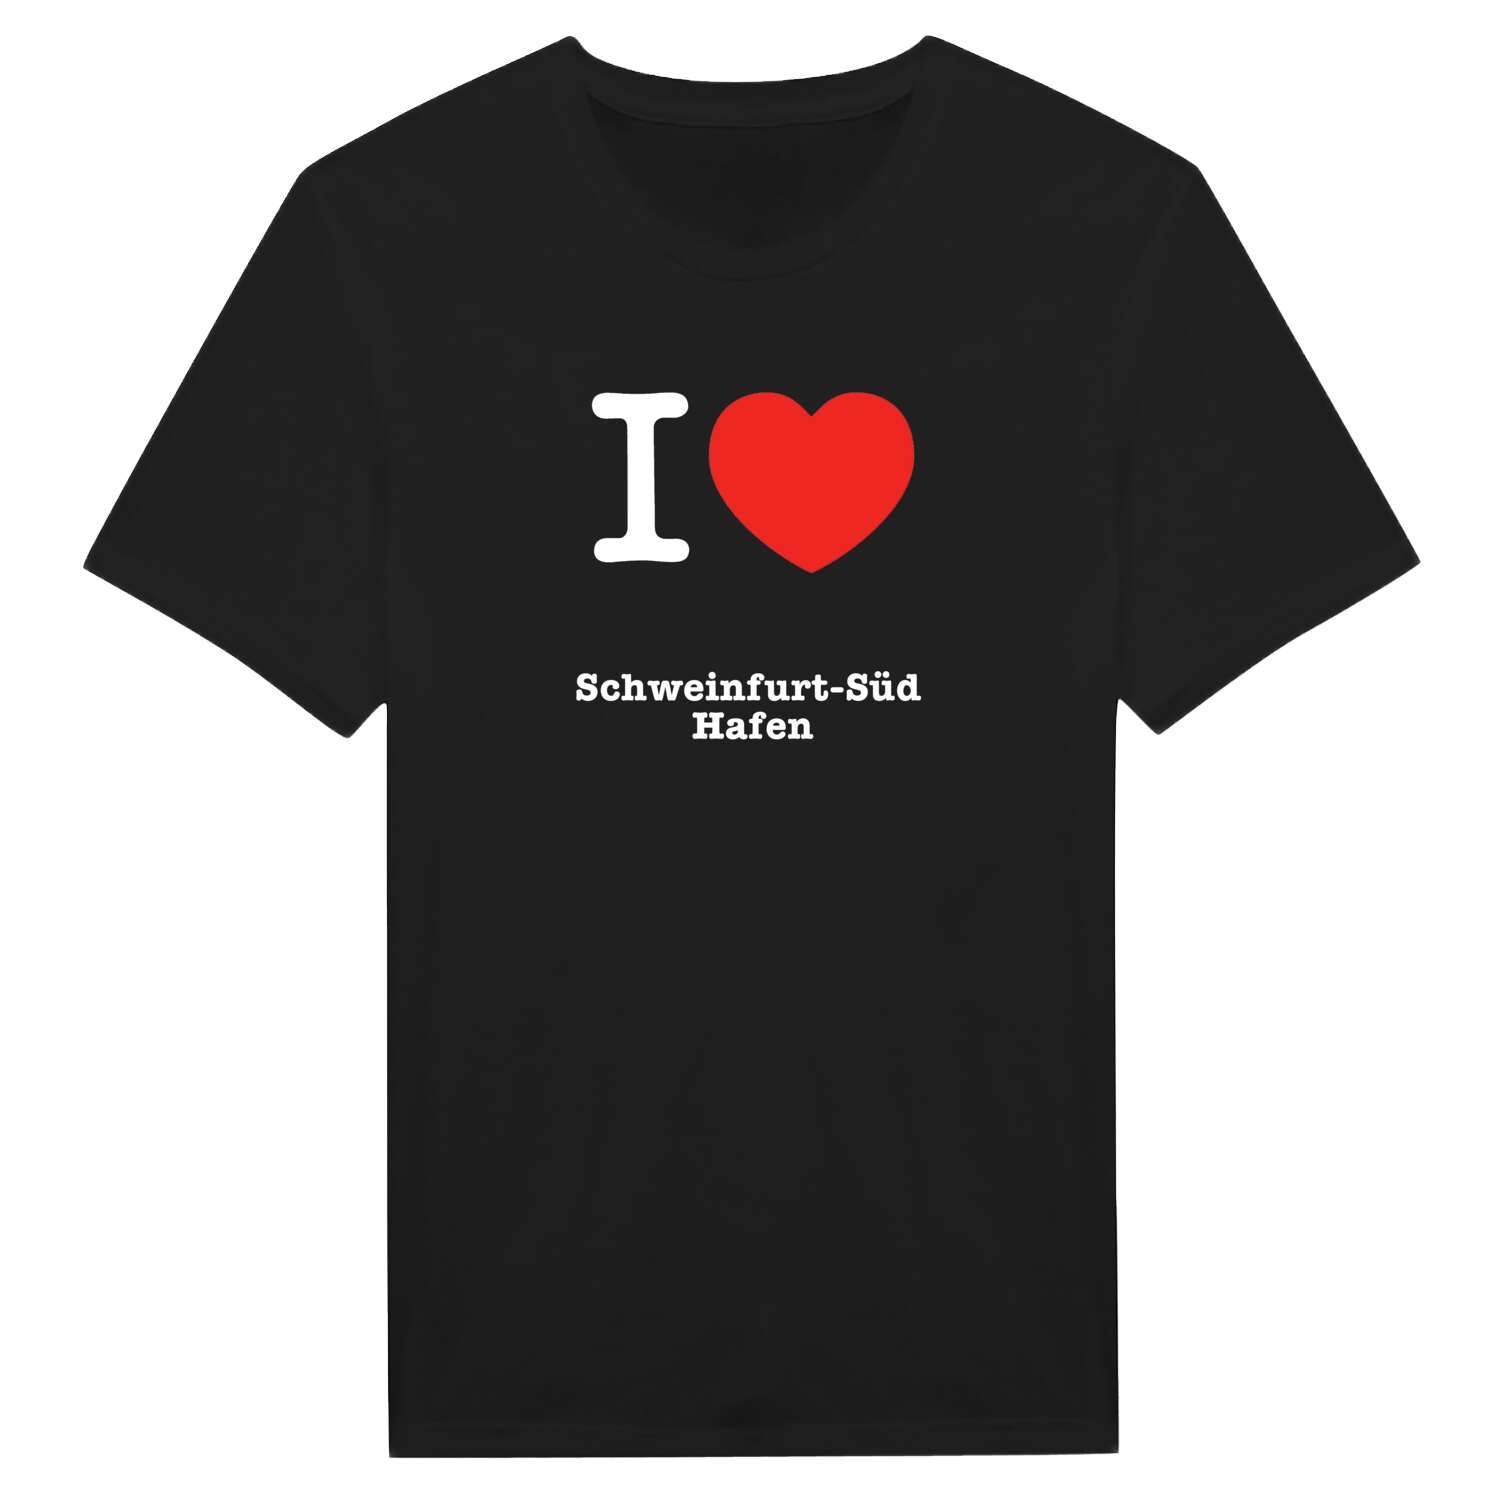 Schweinfurt-Süd Hafen T-Shirt »I love«